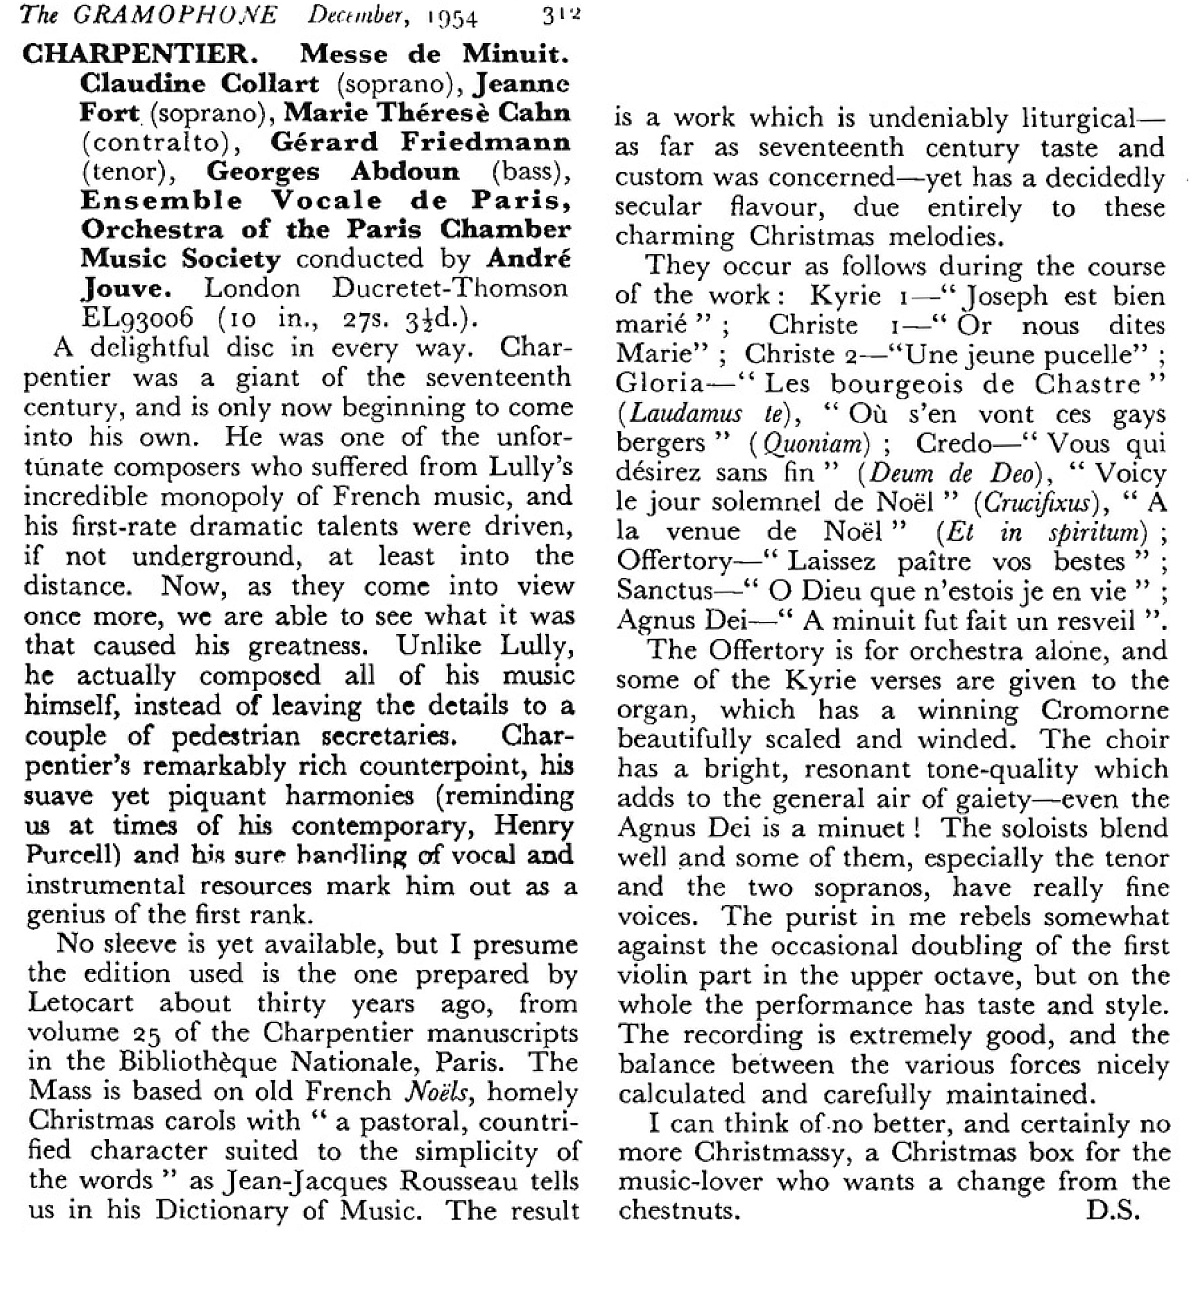 compte-rendu publié dans la revue «The Gramophone» de décembre 1954, en page 312, cliquer pour une vue agrandie